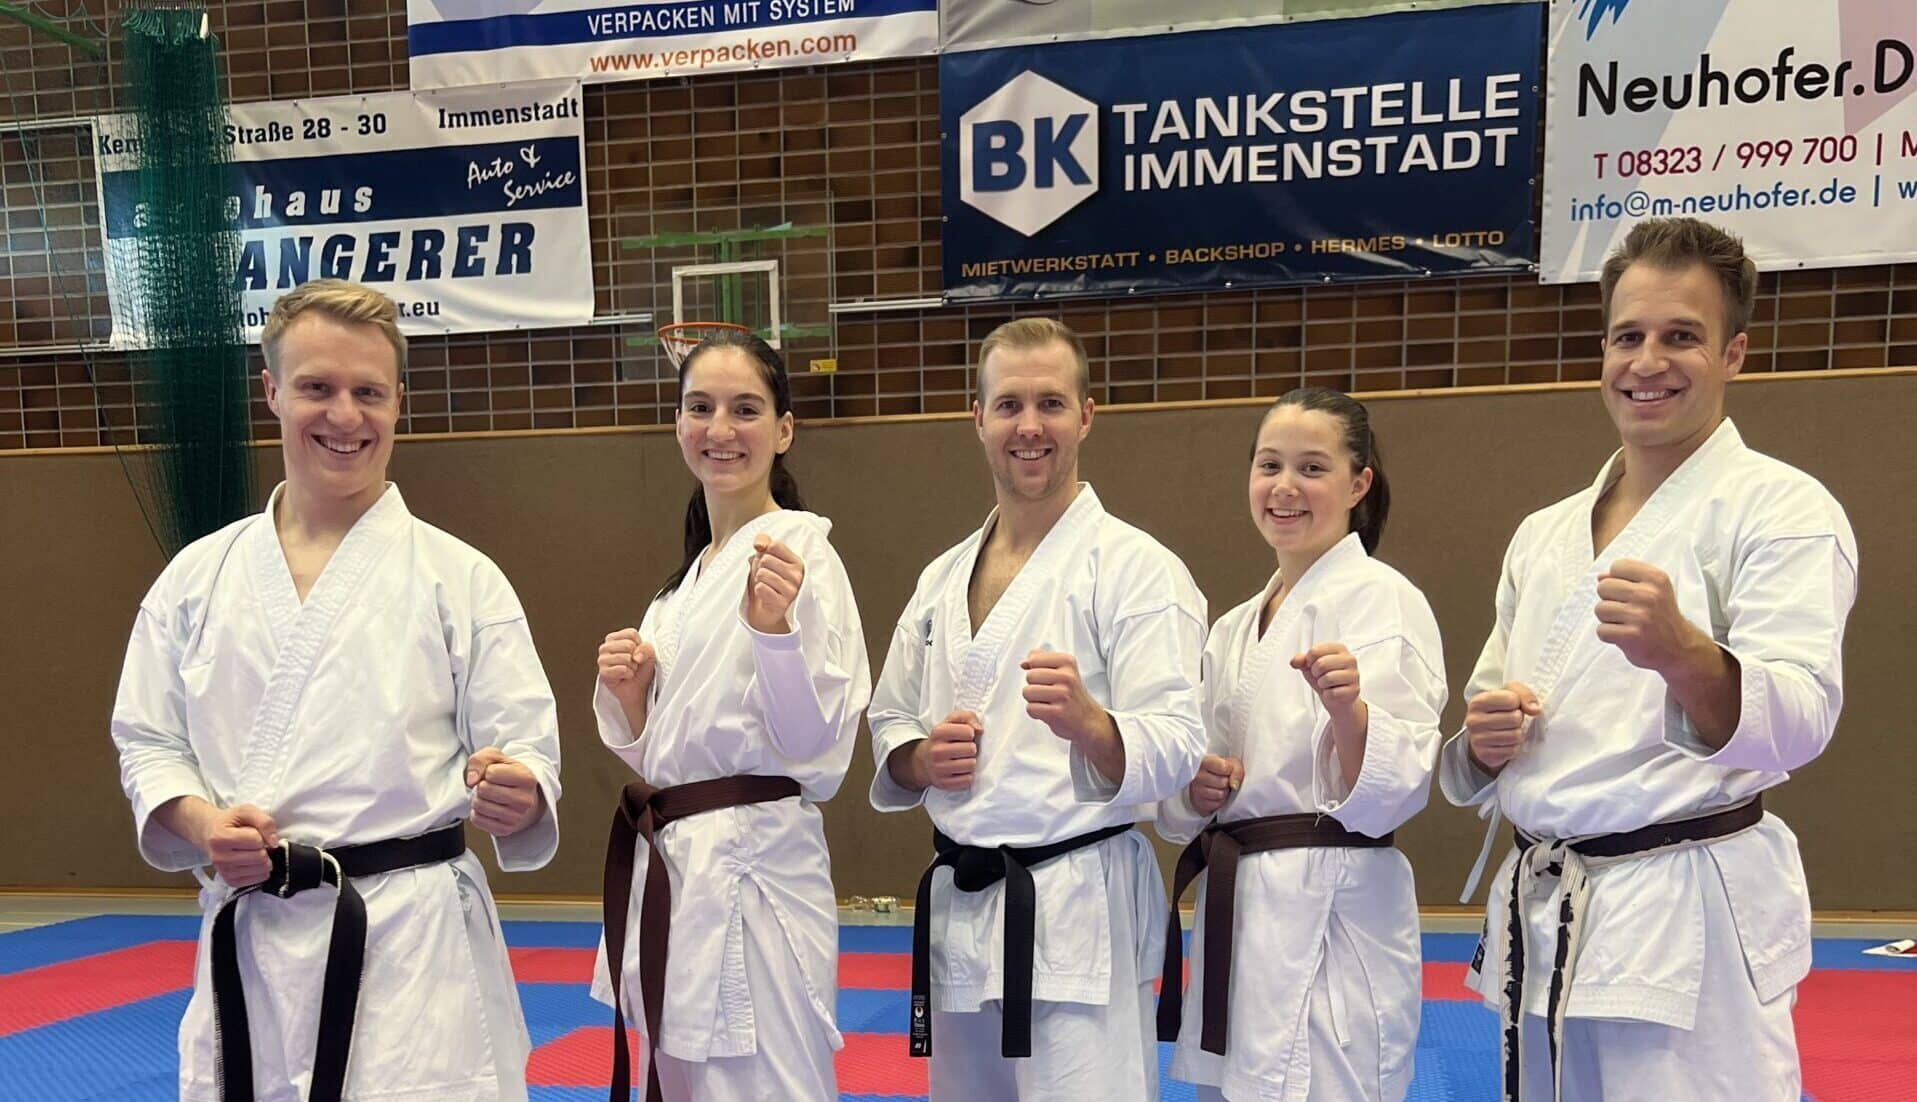 Karatekai Basel - Schweizer Karatekas glänzen an der Süddeutschen Meisterschaft 2022